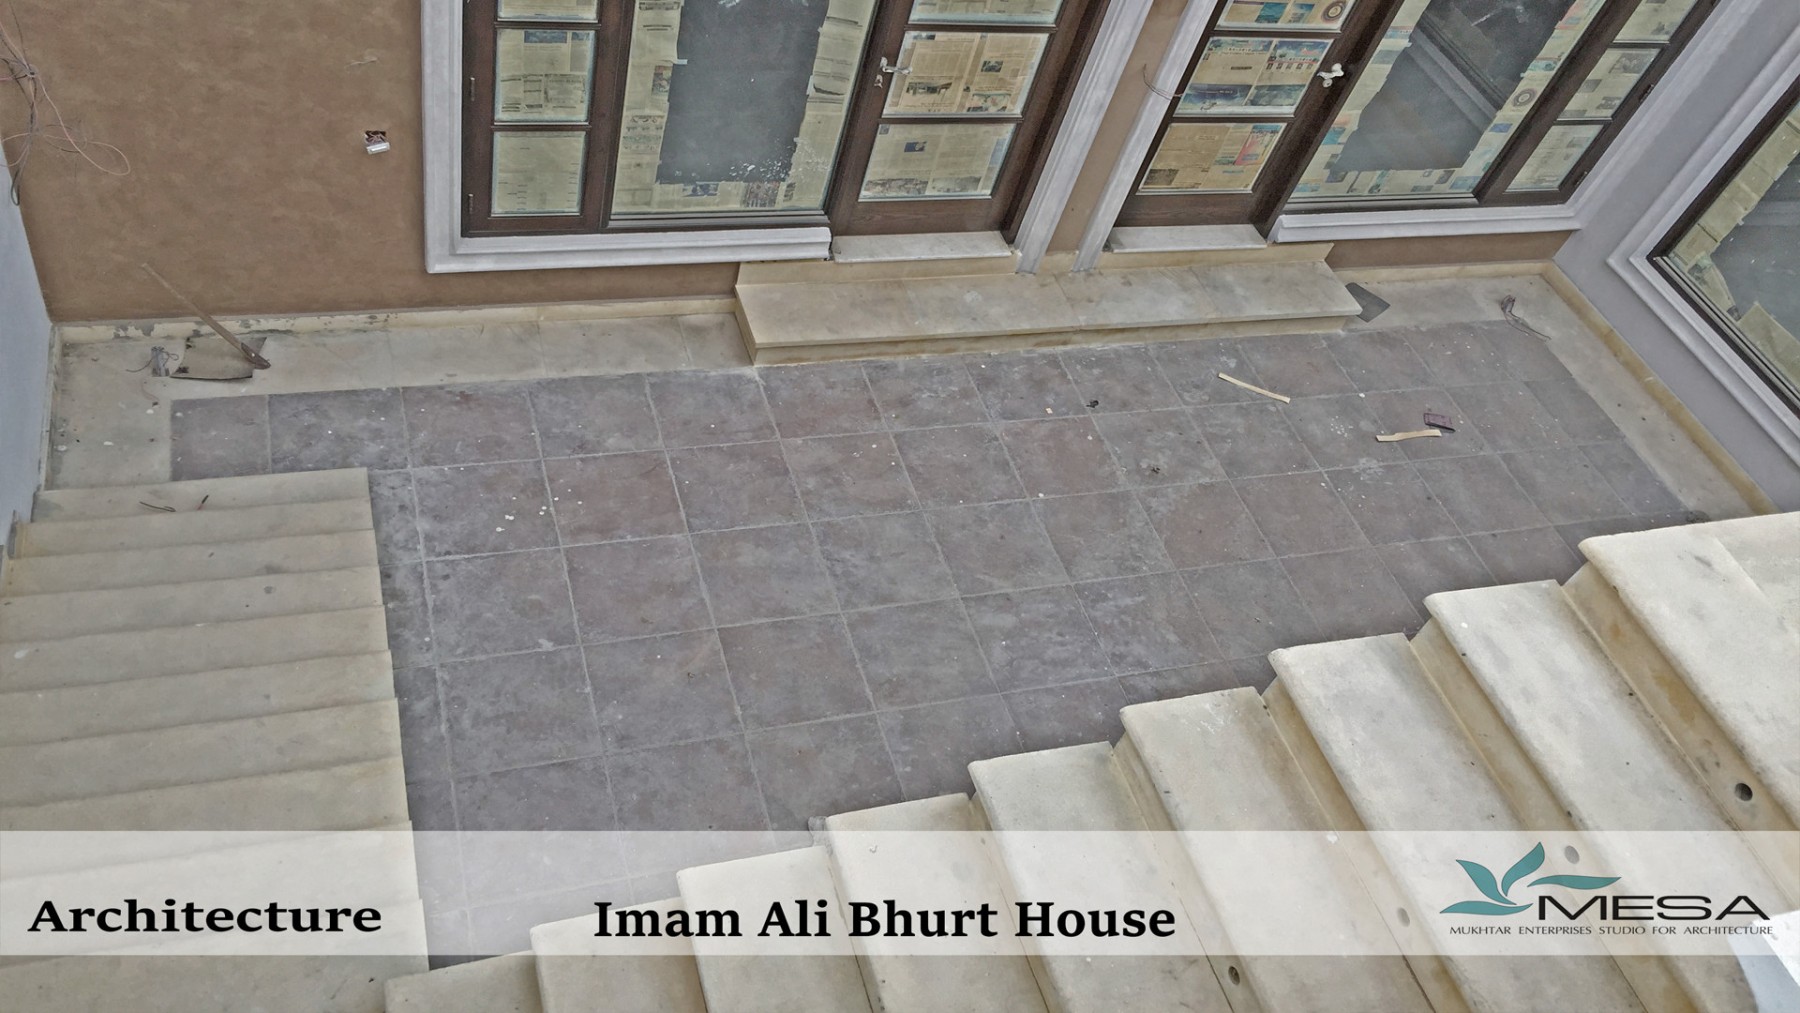 Imam-Ali-Bhurt-House-7